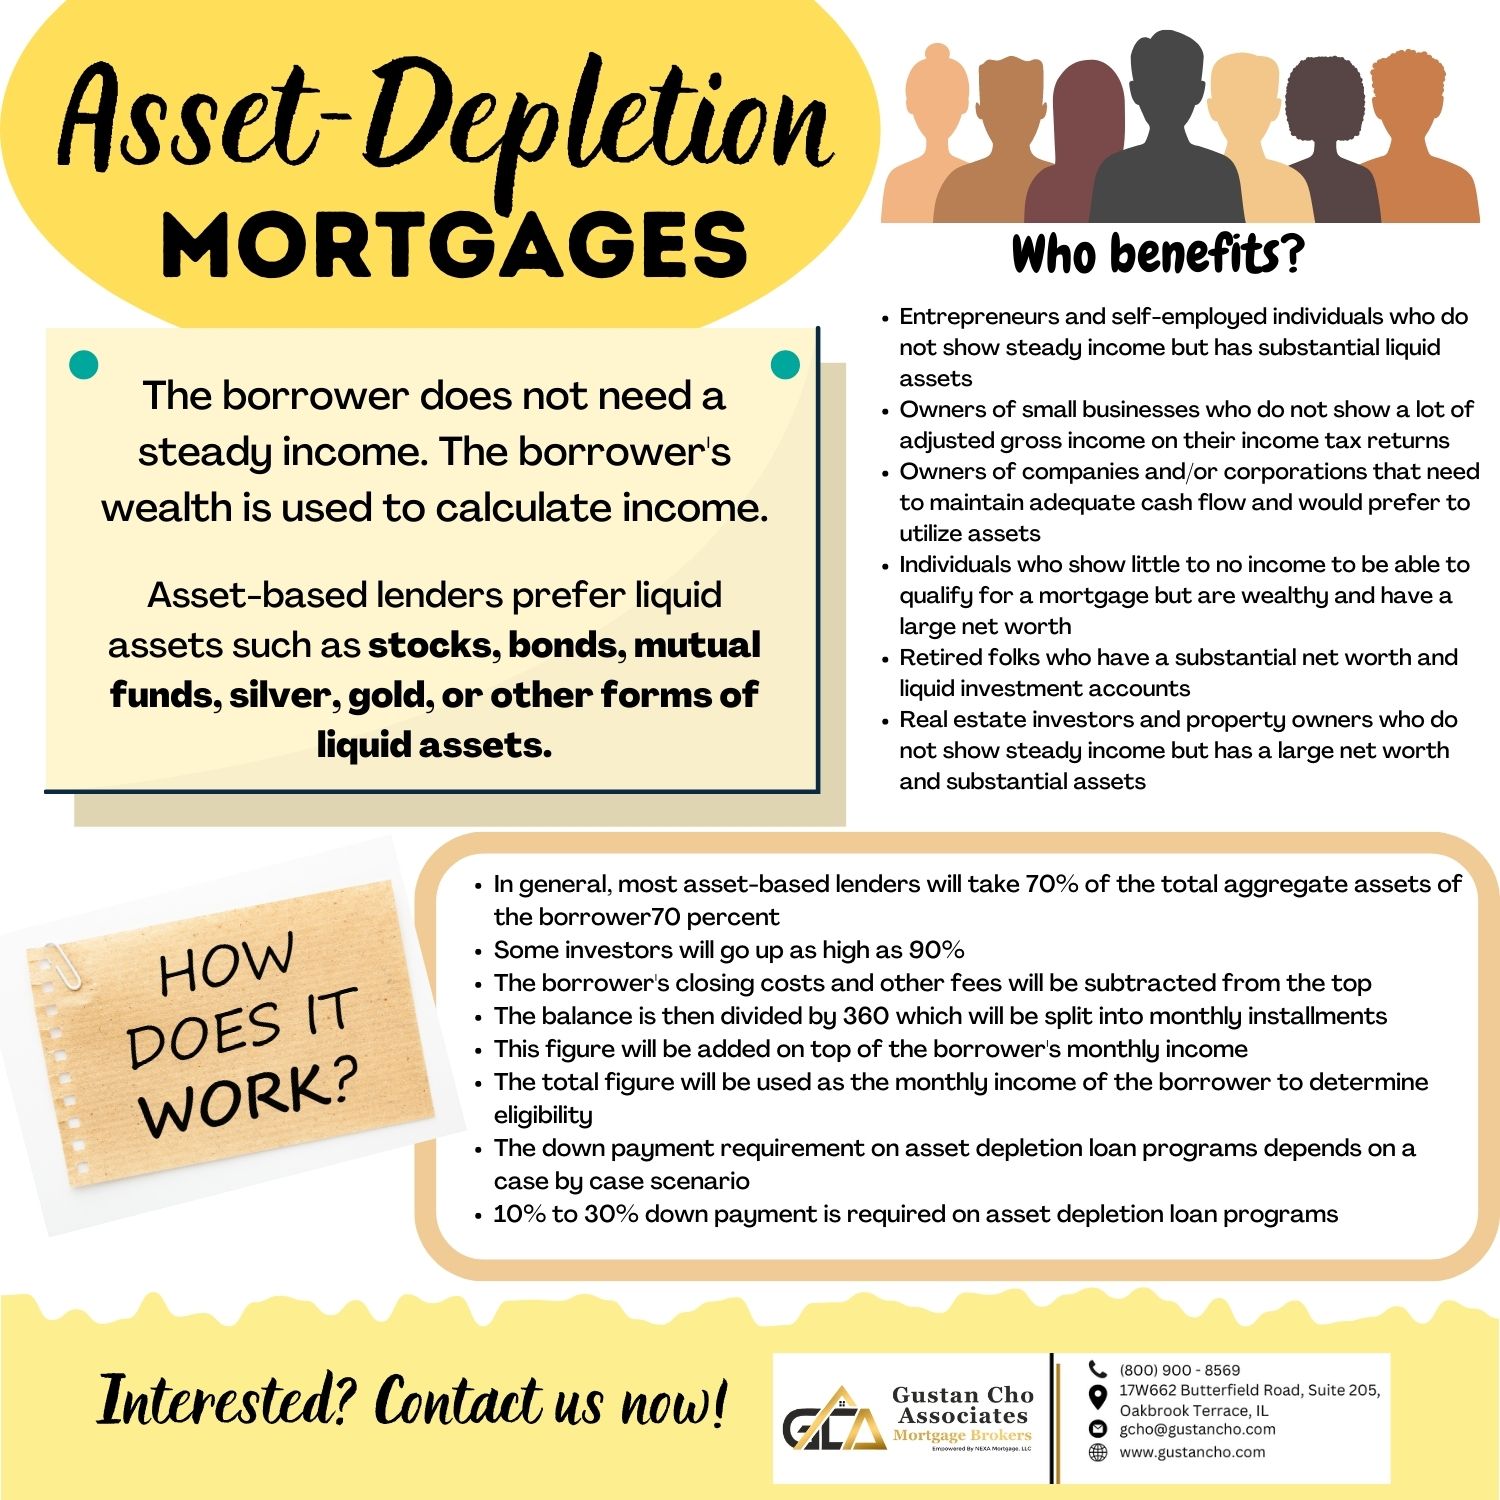 Asset-Depletion Mortgages